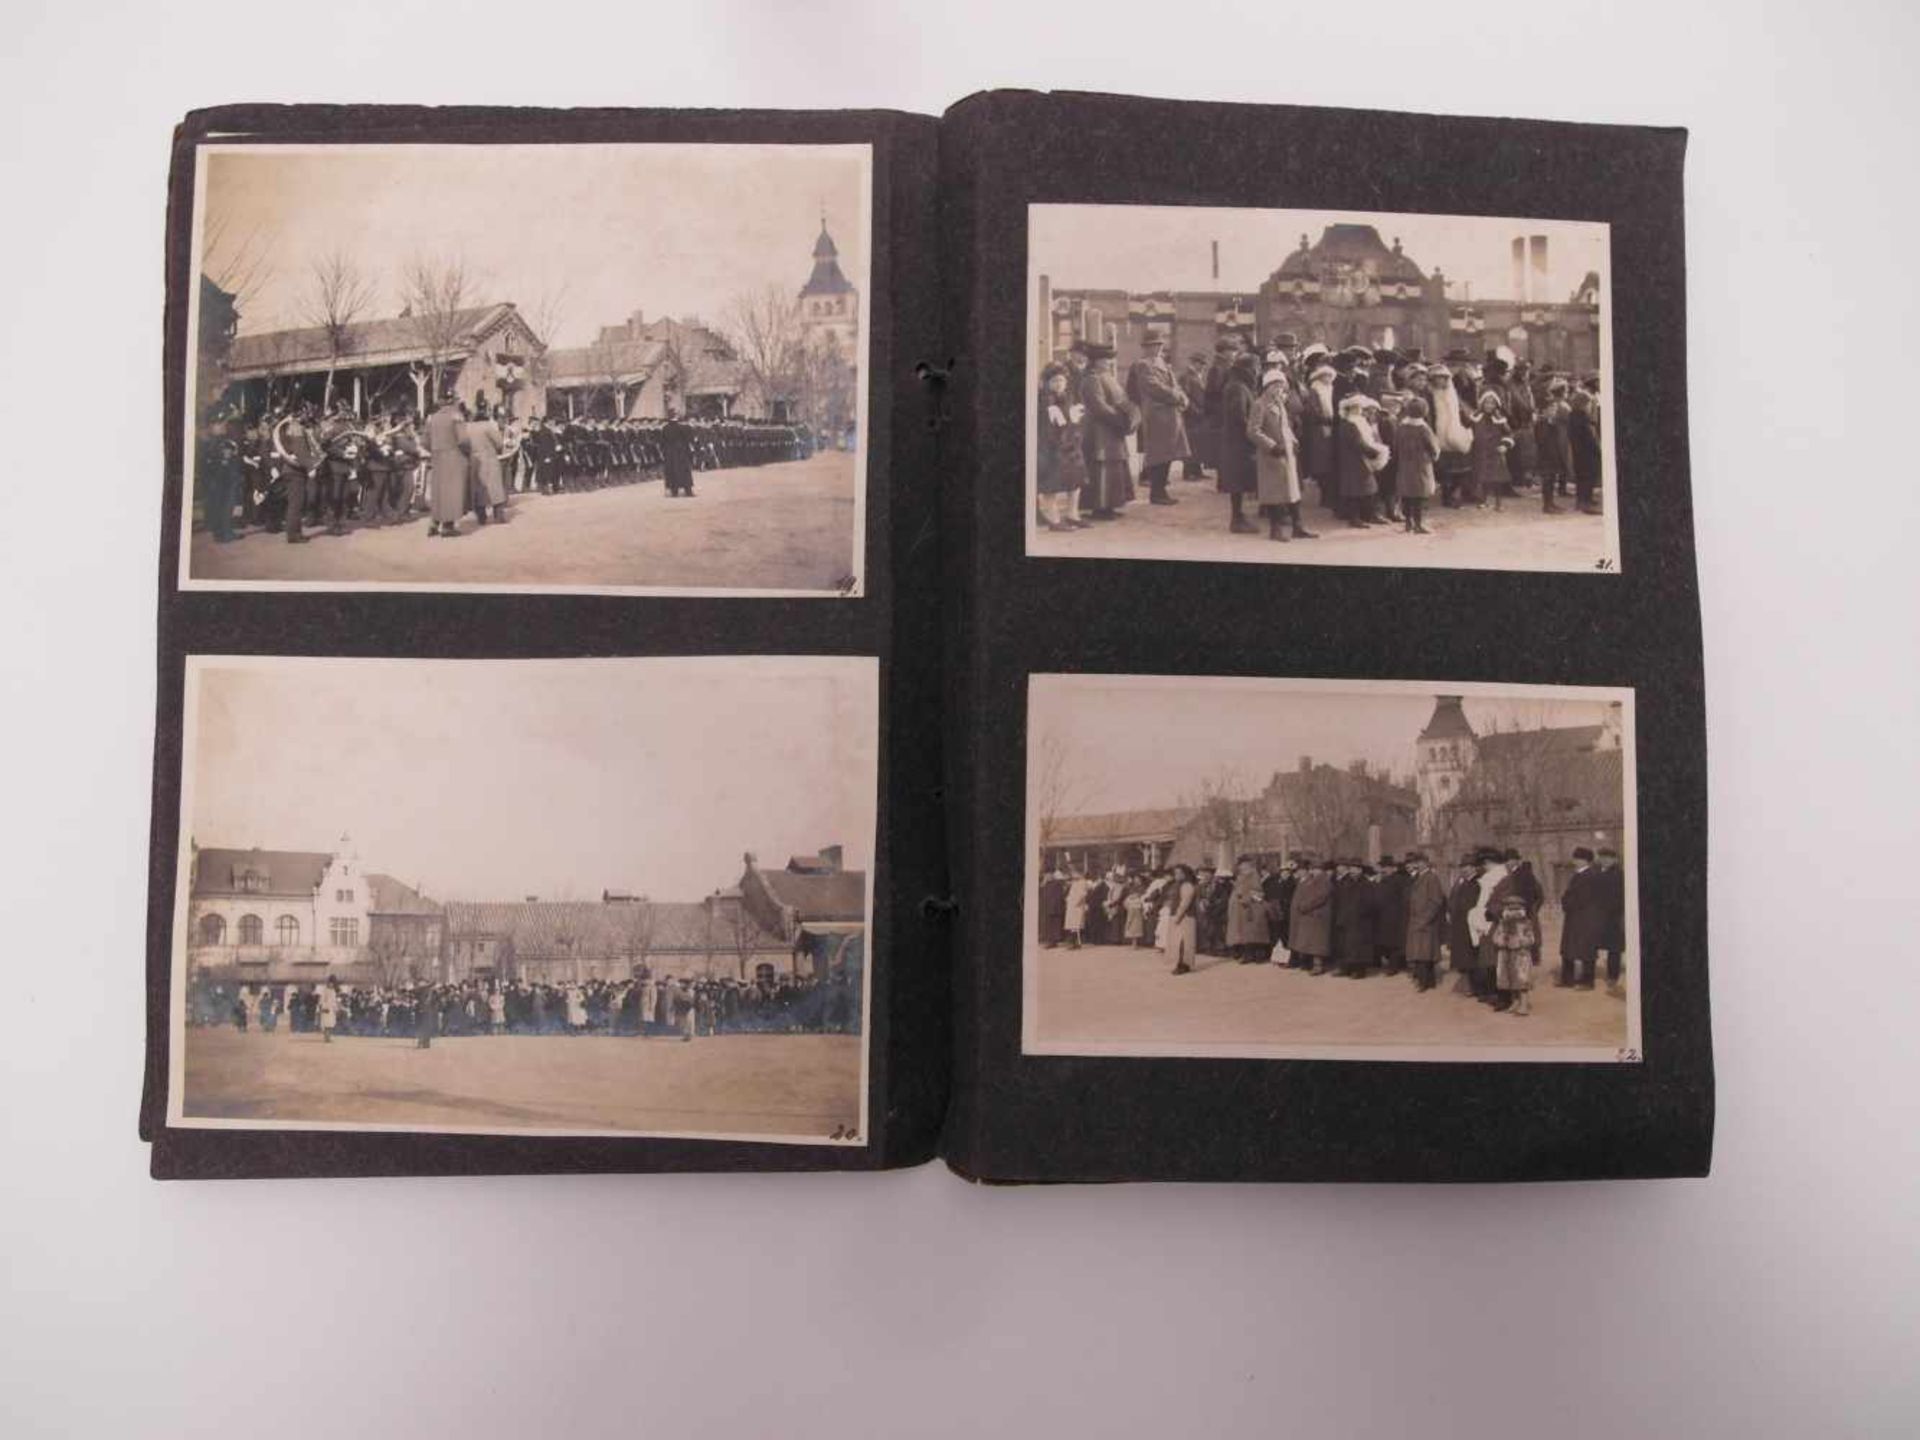 ALBUM MIT FOTOS DER PARADE ZUM KAISERGEBURTSTAG. China. Datiert 29. Januar 1917. Heft (25,5 x 19, - Image 4 of 11